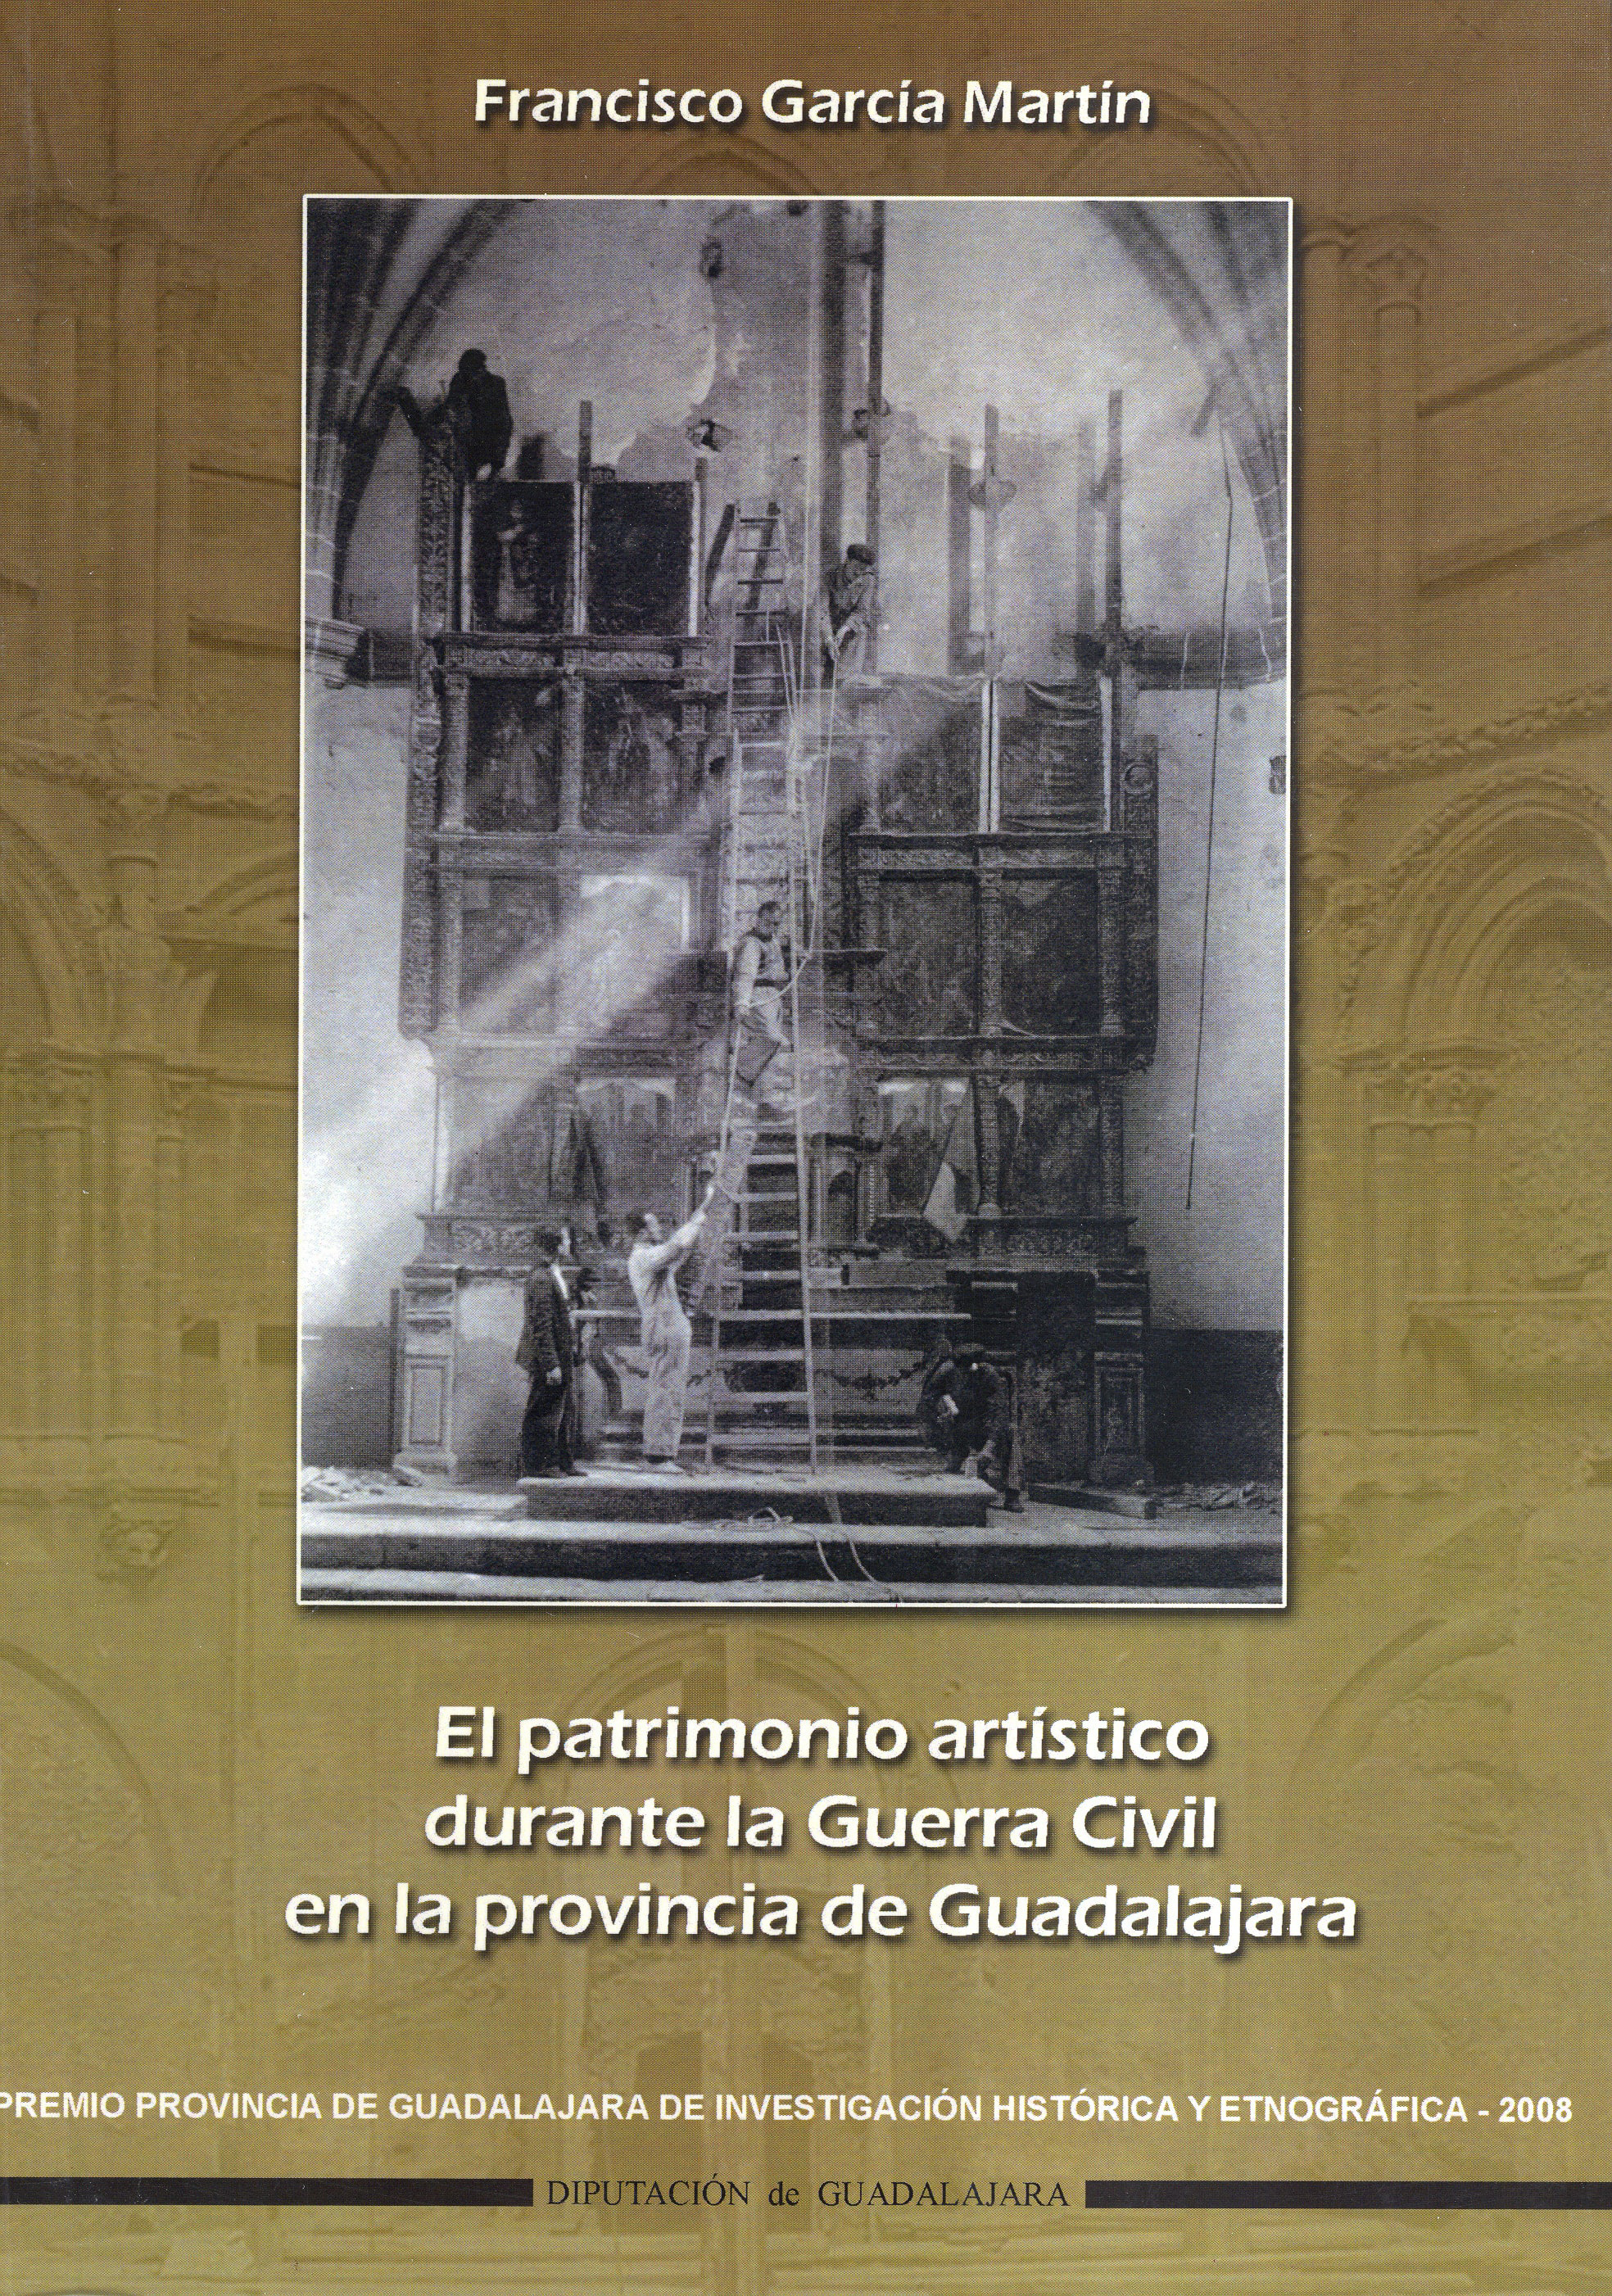 El Patrimonio artistico durante la Guerra Civil en la provincia de Guadalajara